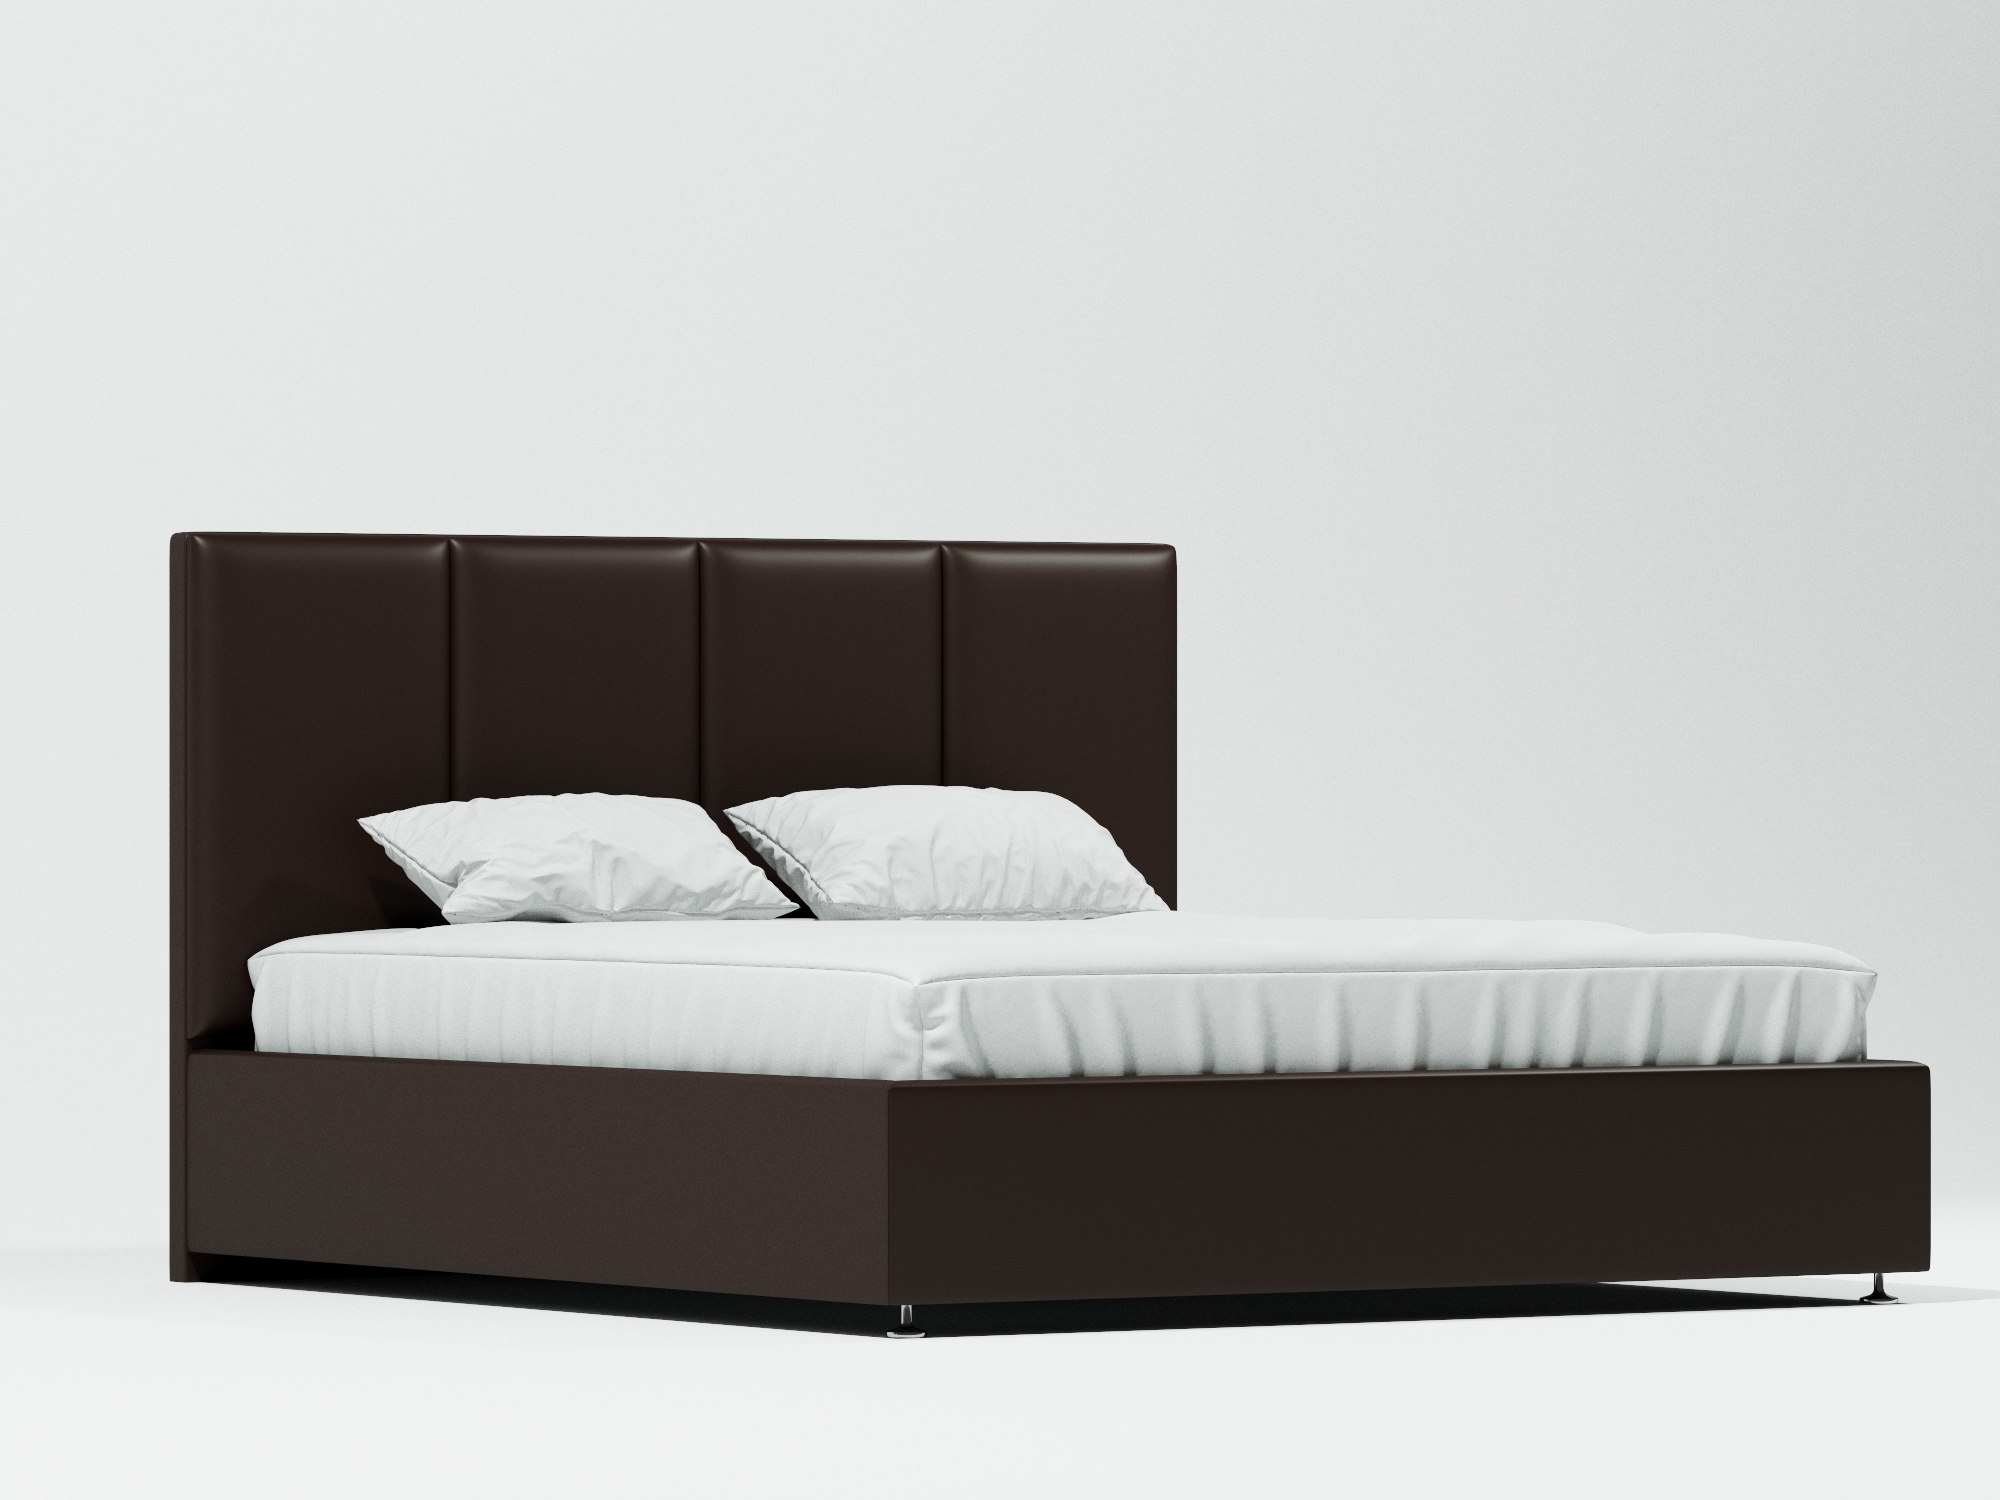 Кровать Секондо Плюс (160х200) Венге, ДСП, МДФ кровать николь 160х200 бетон графит бежевый коричневый темный мдф лдсп